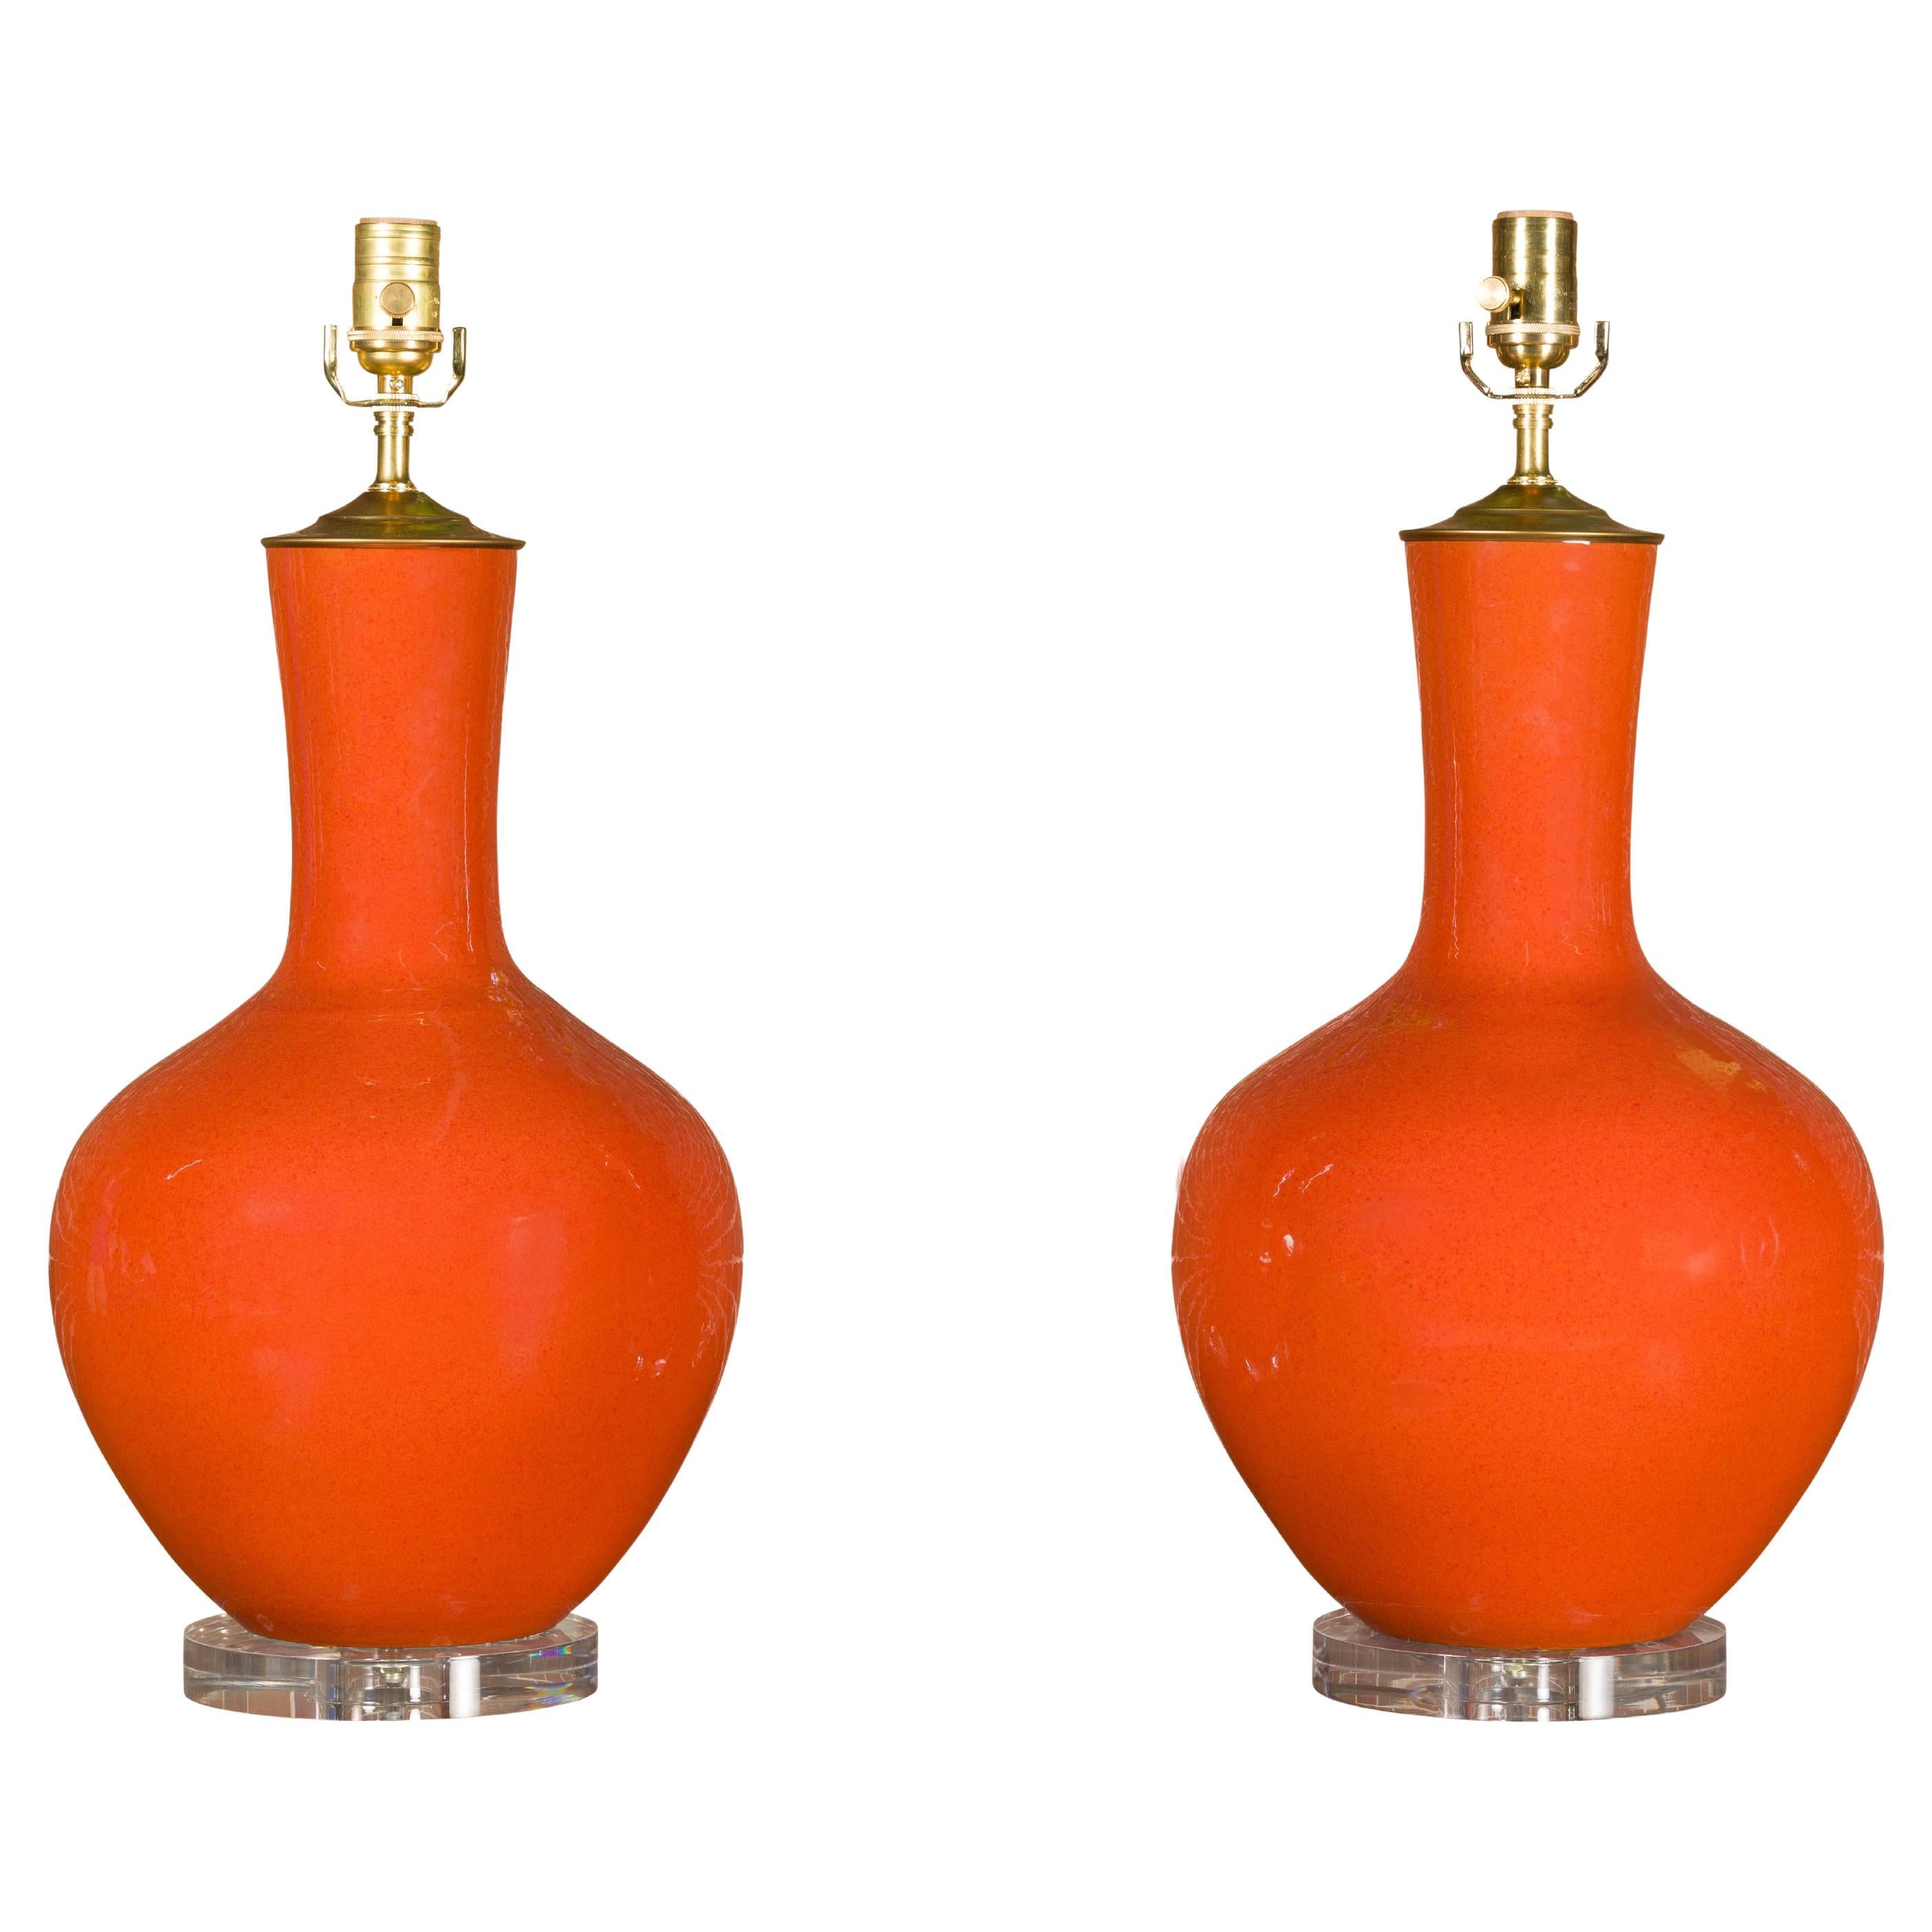 Paar gebrannte orangefarbene asiatische Porzellan-Tischlampen auf Lucite-Sockeln, USA verdrahtet